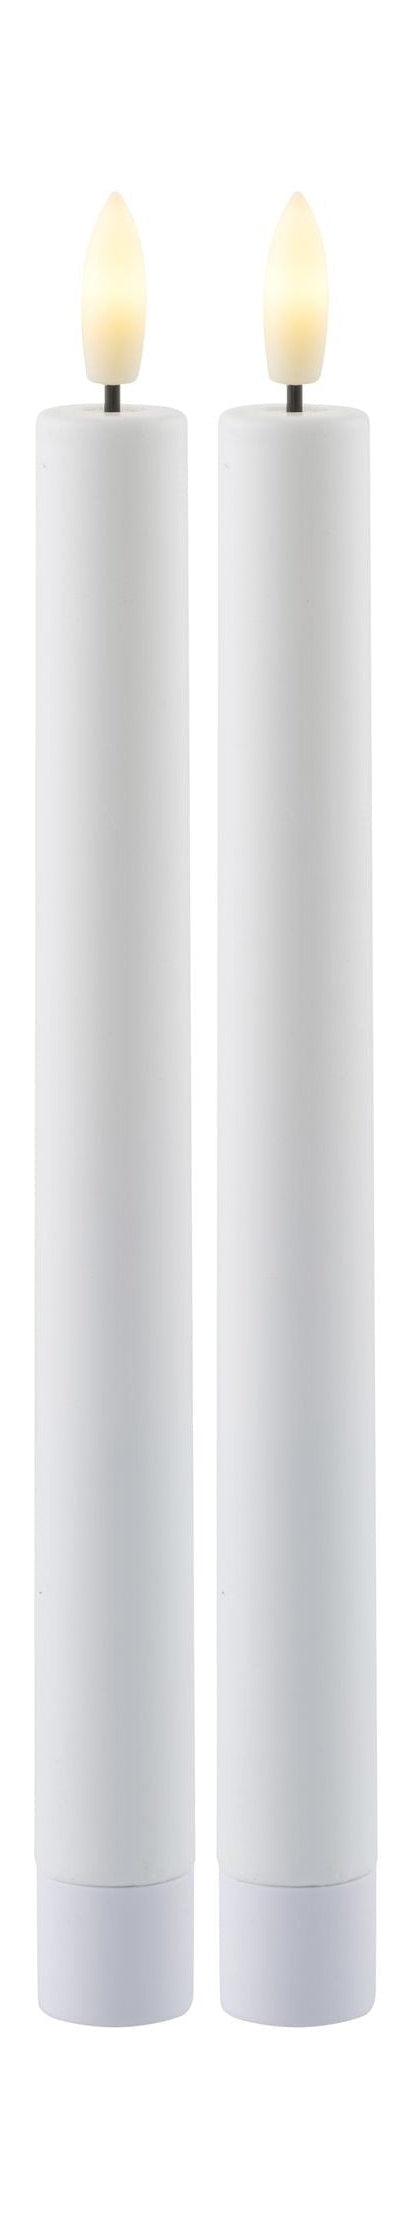 Sirius Sille可充电皇冠LED灯2个。白ØxH 2,2x25厘米